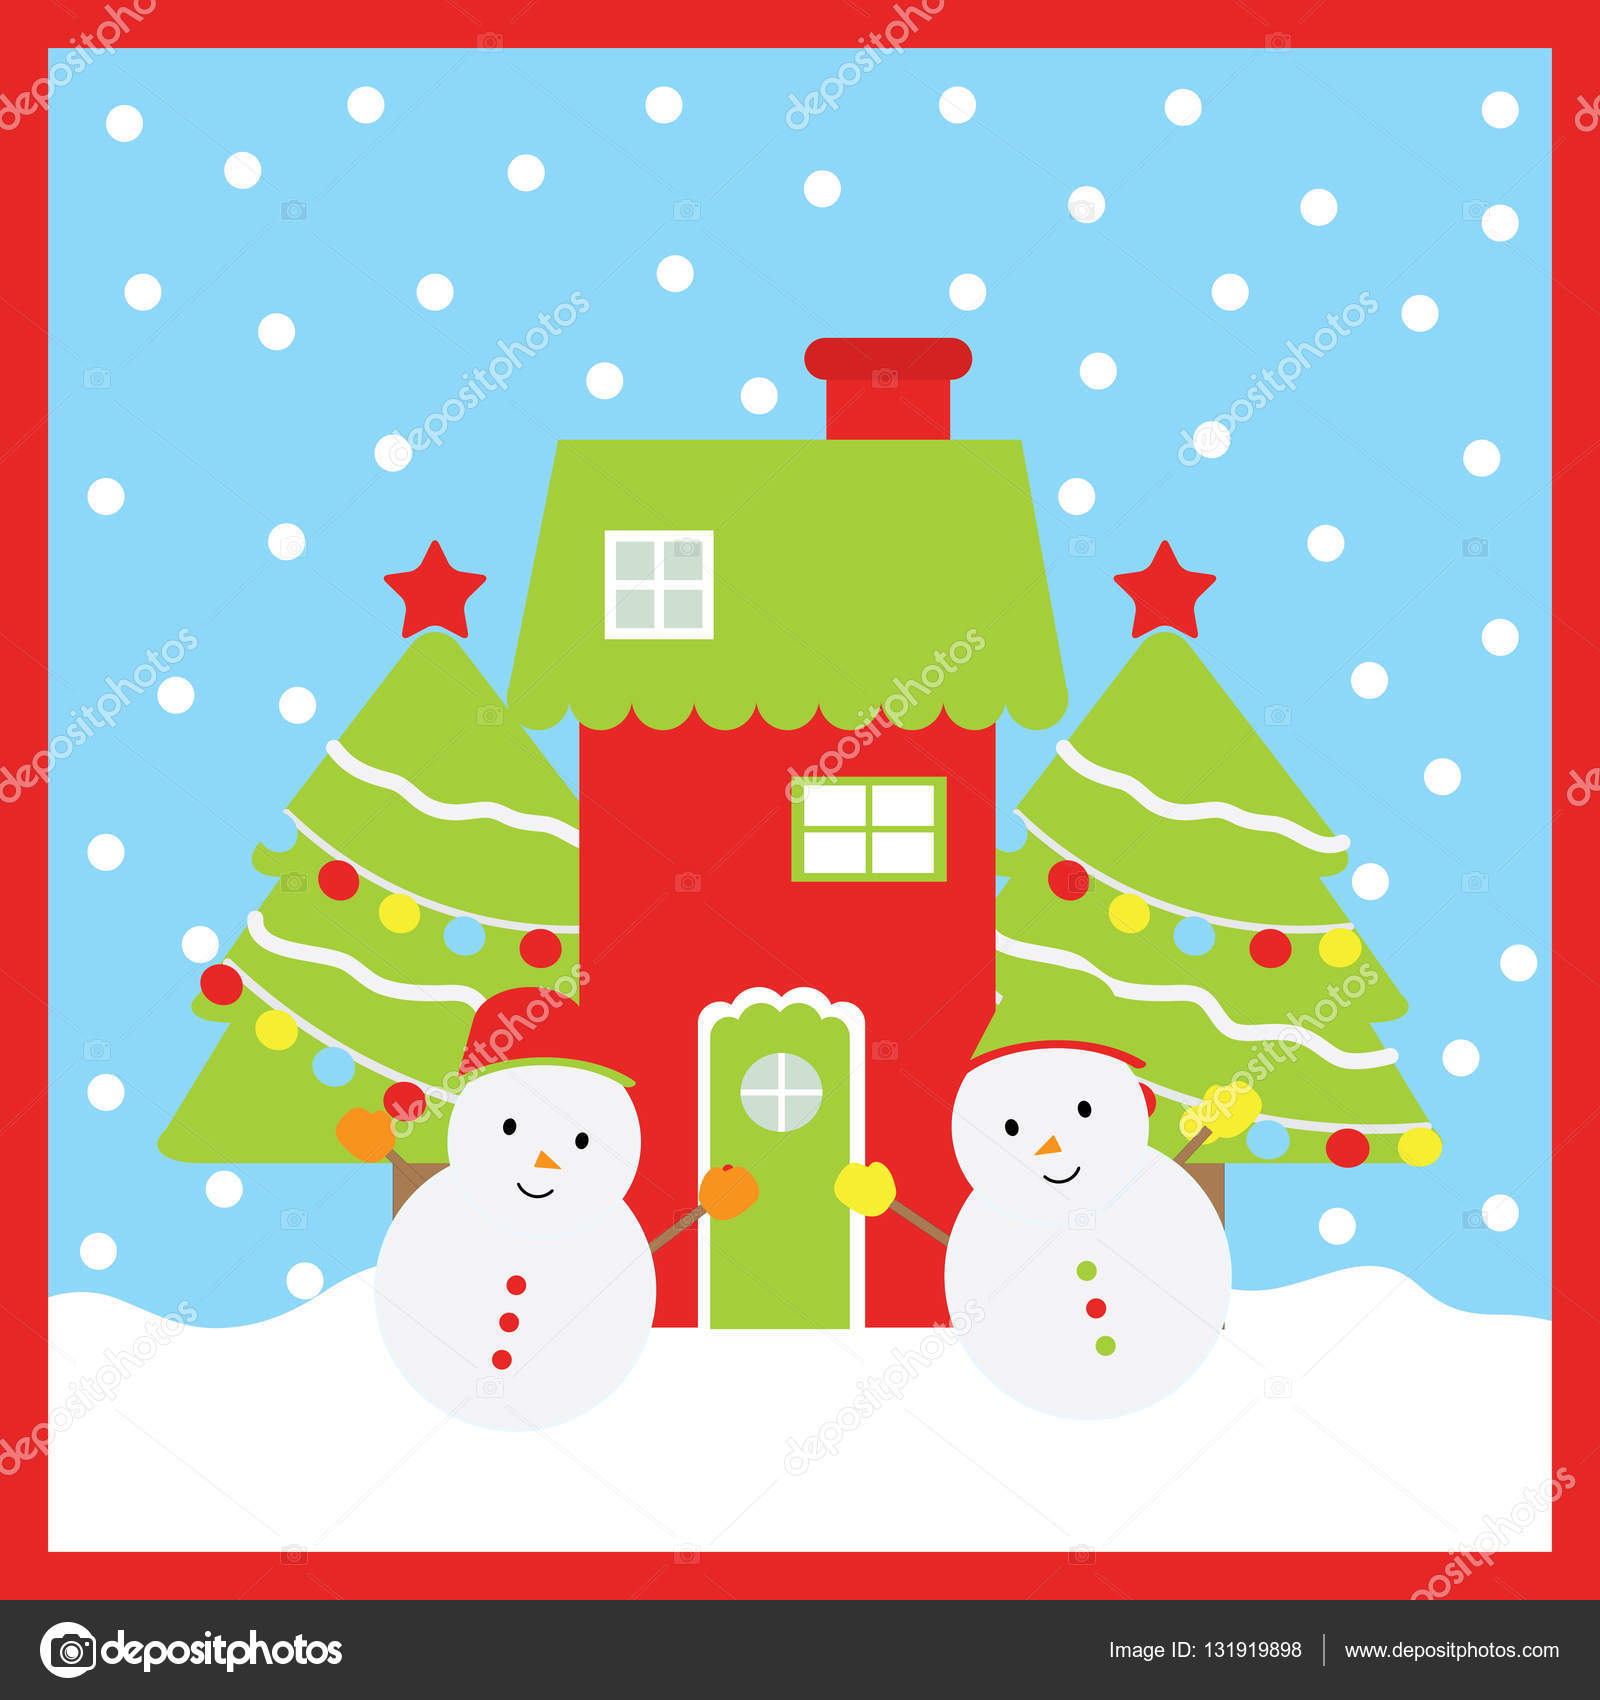 クリスマス イラストかわいい雪だるま クリスマス ツリー かわいい家の子供の壁紙 ポストカード クリスマスのグリーティング カードに適して ストックベクター C Saidi21ns